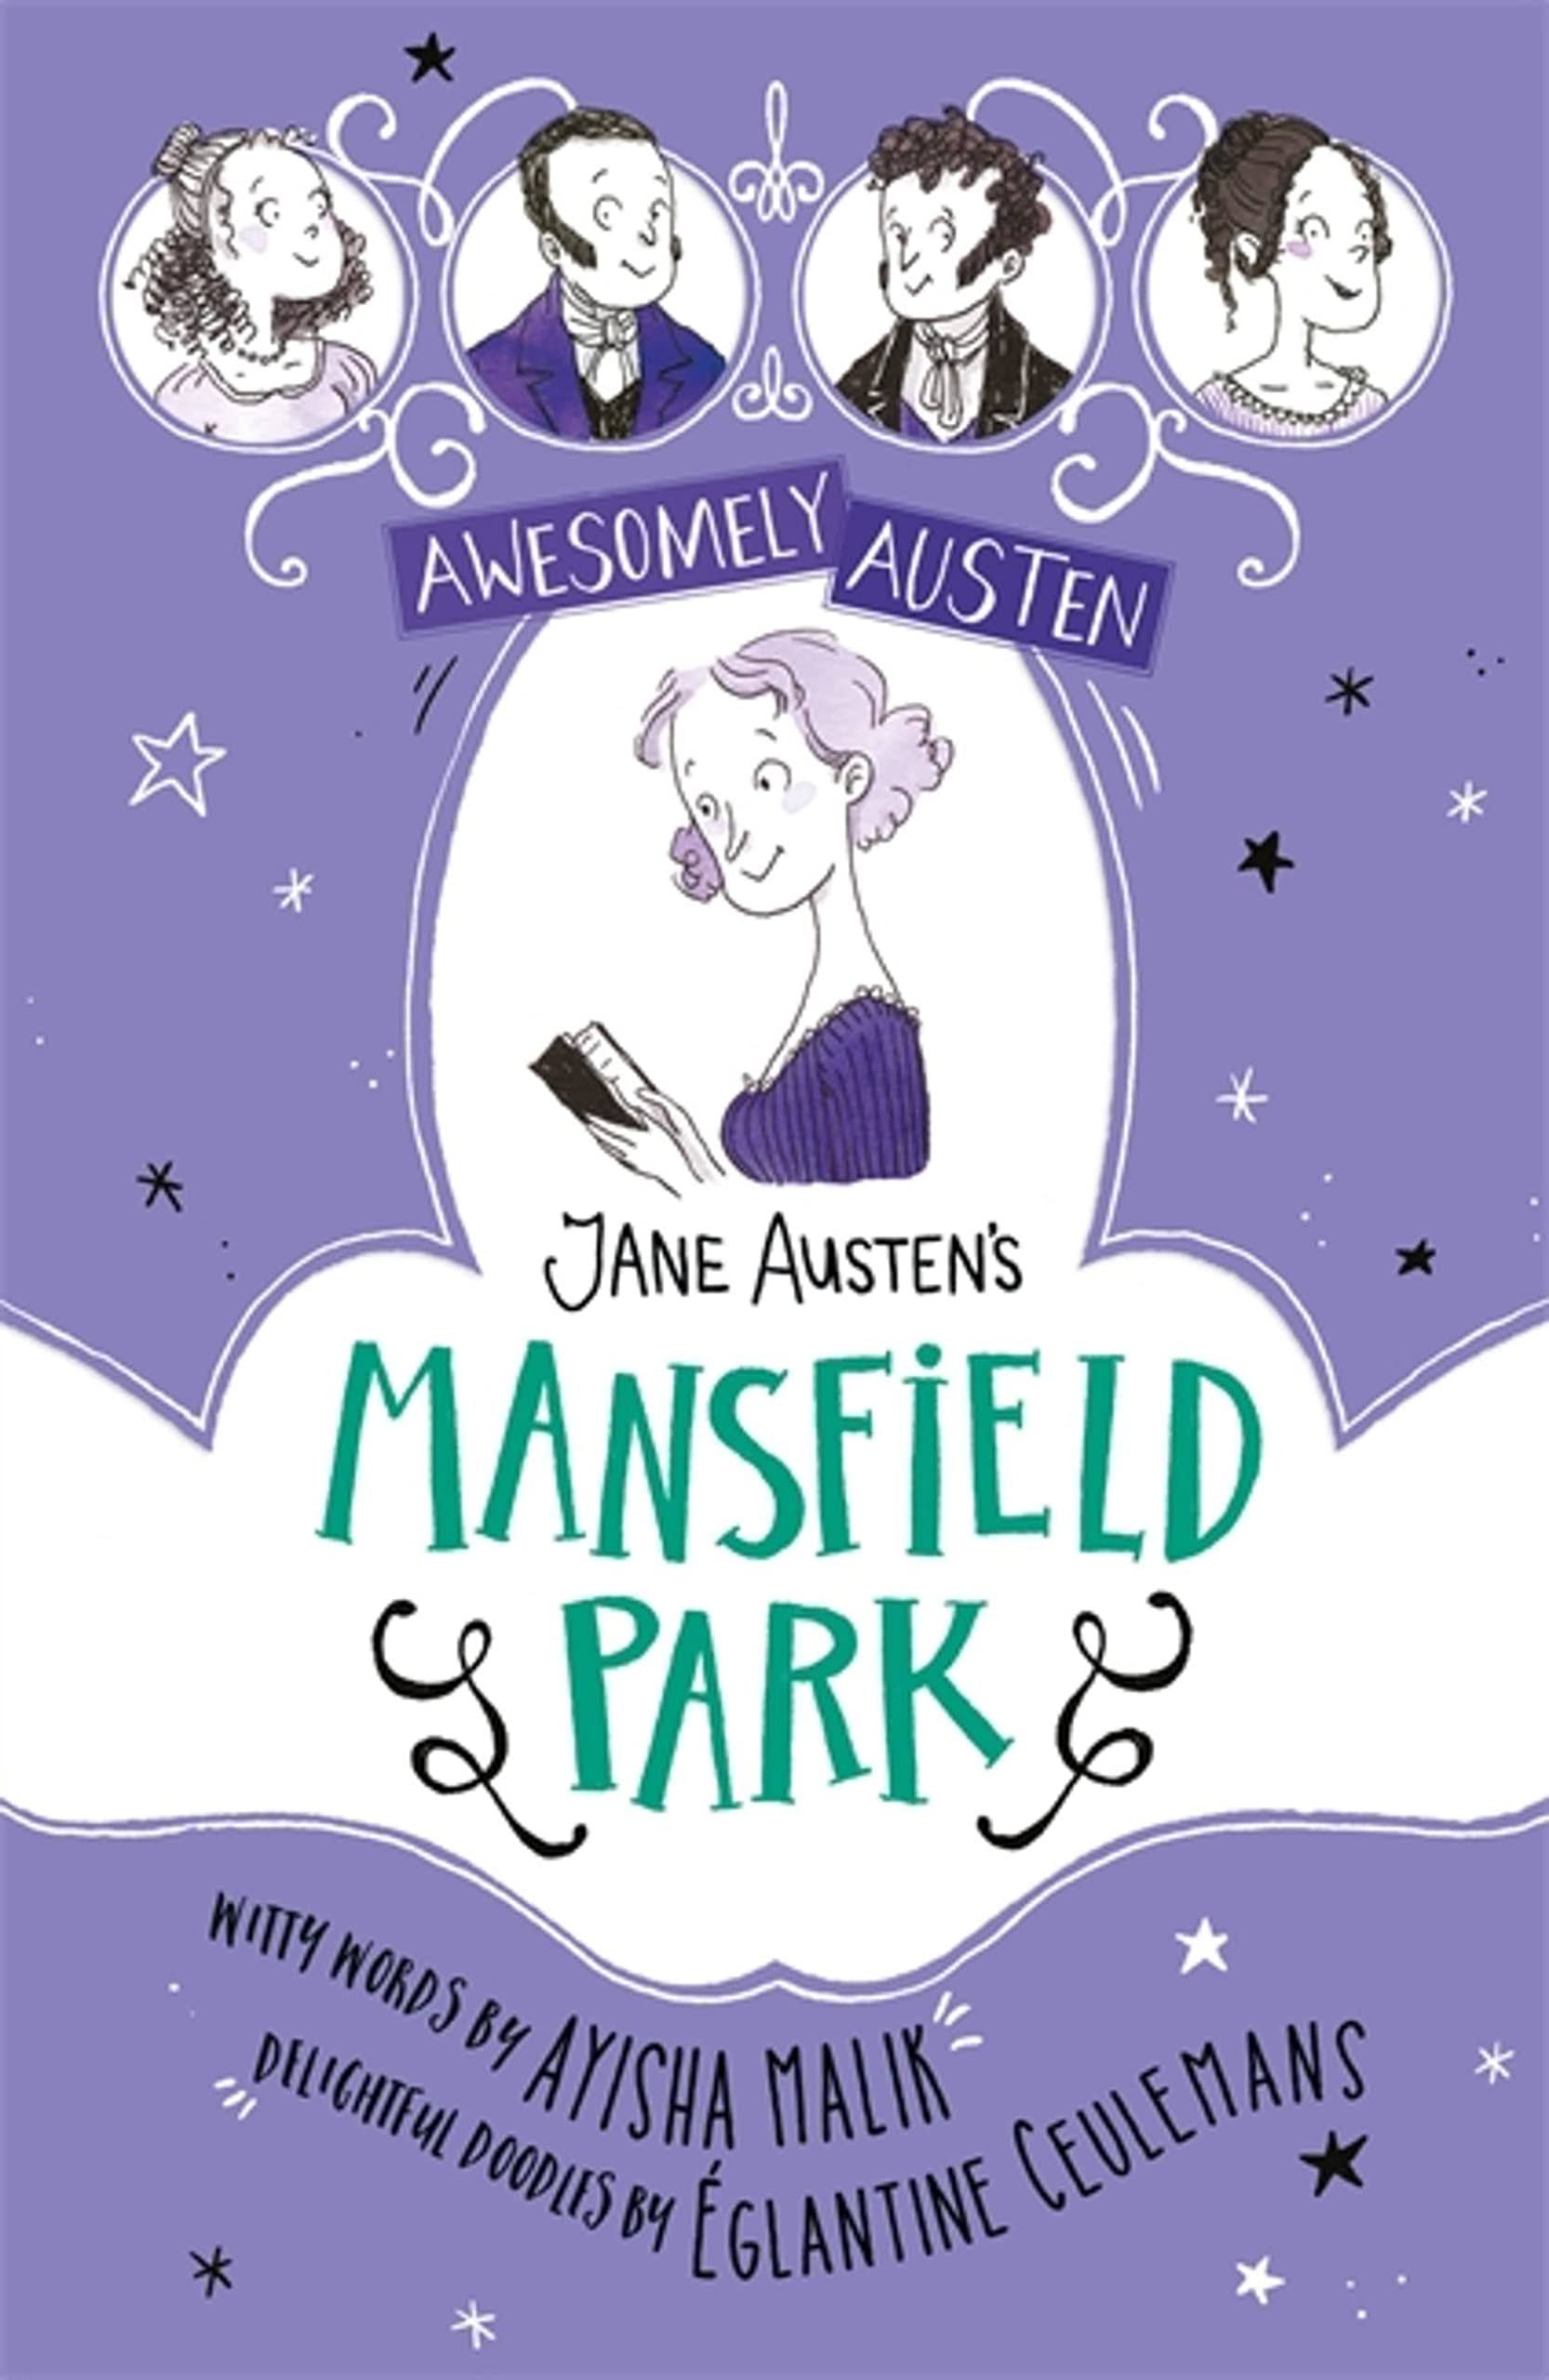 Jane Austen's Mansfield Park [Book]